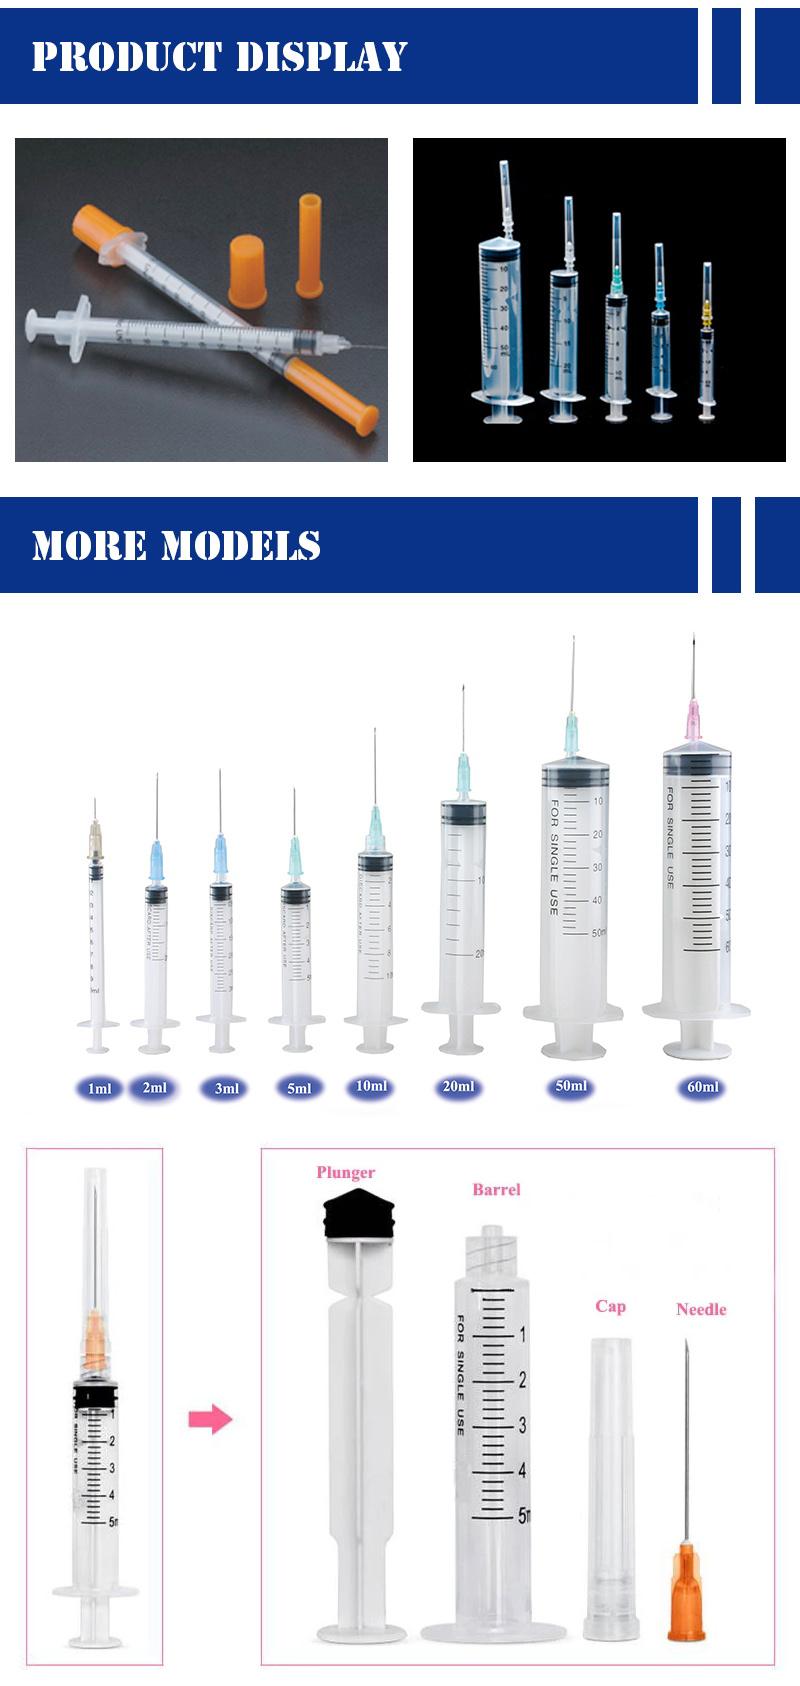 Wego Disposable Plastic Medical Luer/Slip Lock Syringe Injection Syringe with Needle